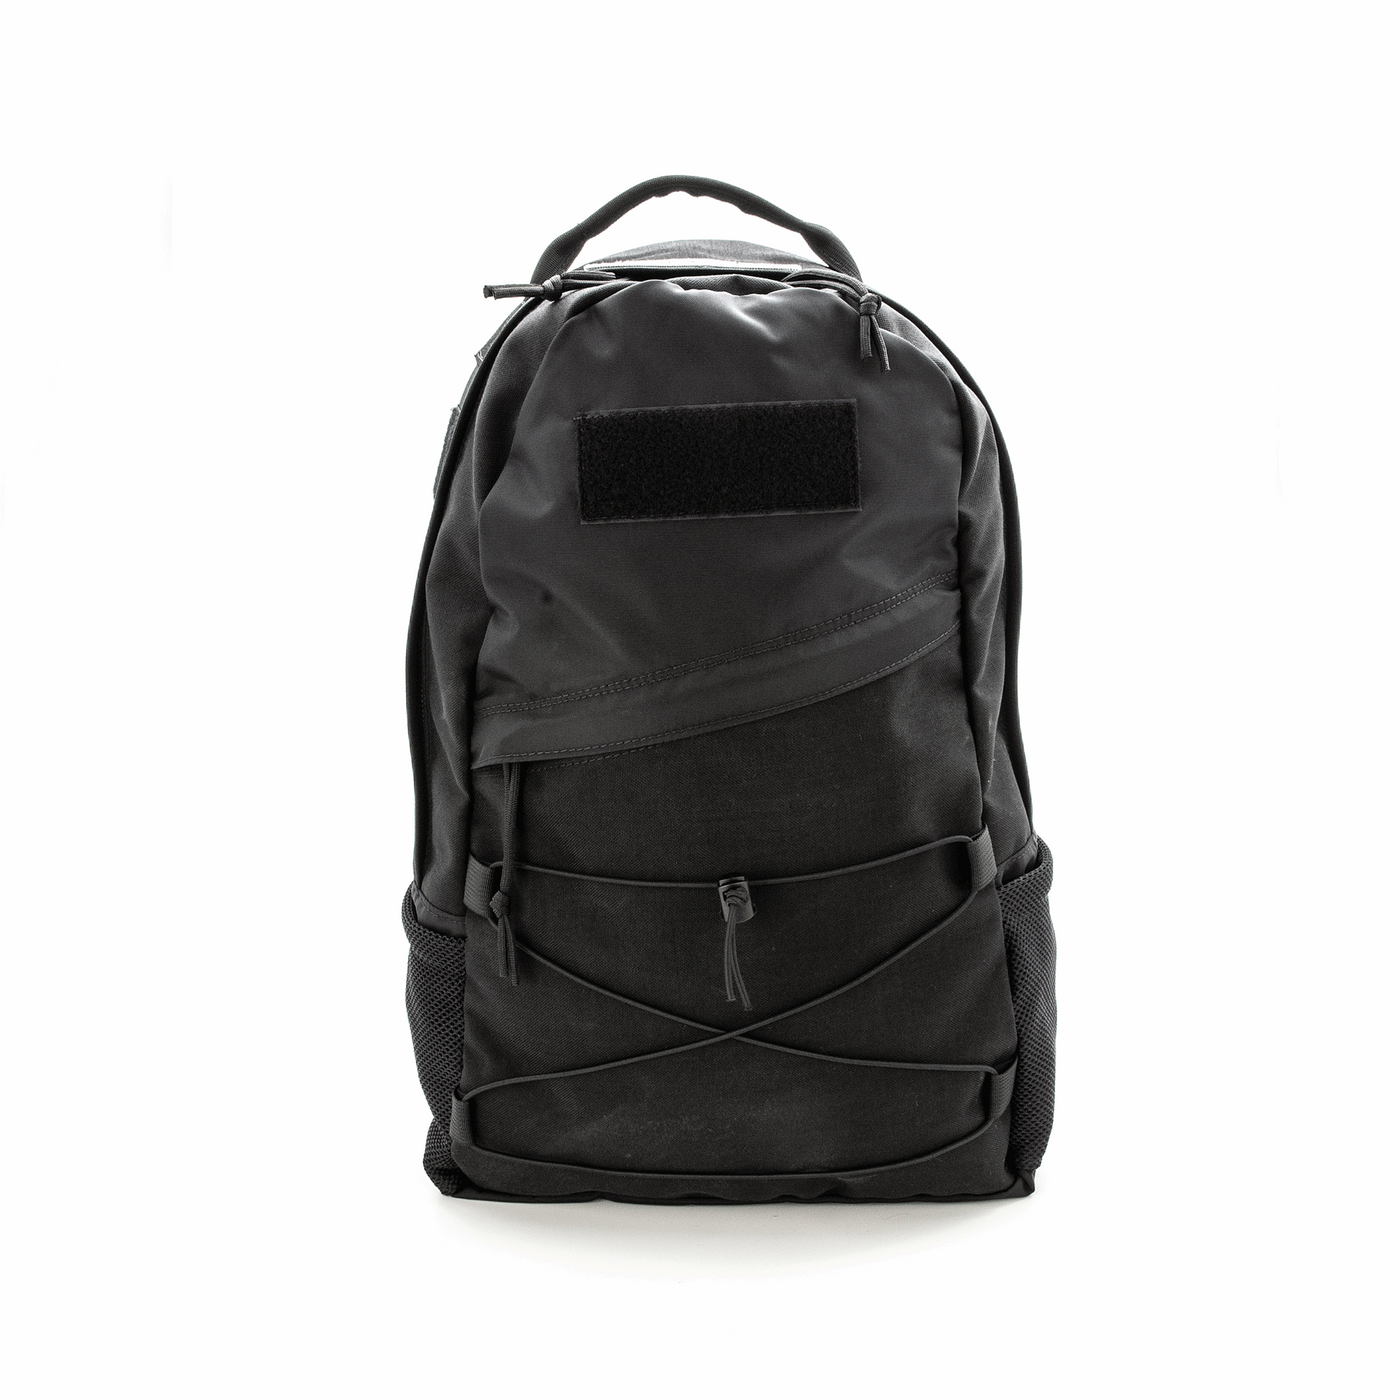 Maglite EDC Black Backpack